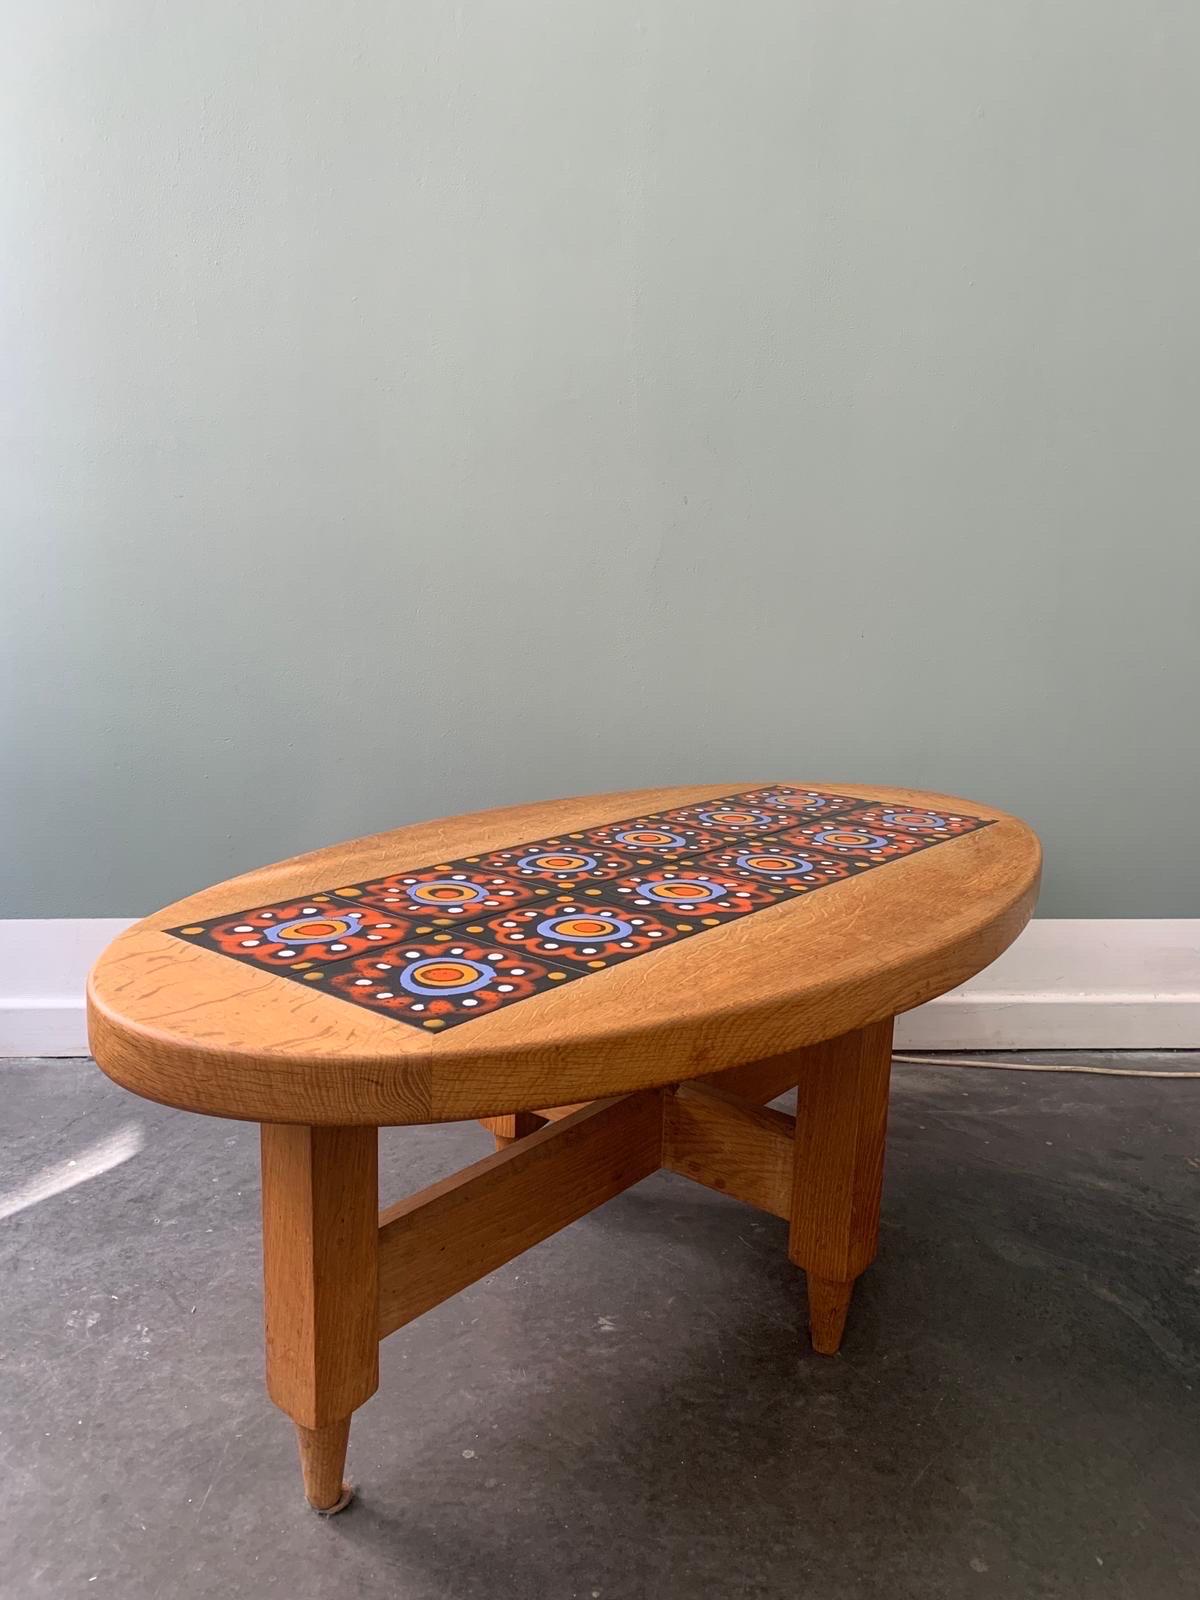 Table basse ovale en chêne et céramique par Guillerme et Chambron, Edition Votre Maison
Si les couleurs des tuiles ne conviennent pas, nous pouvons proposer d'autres couleurs.